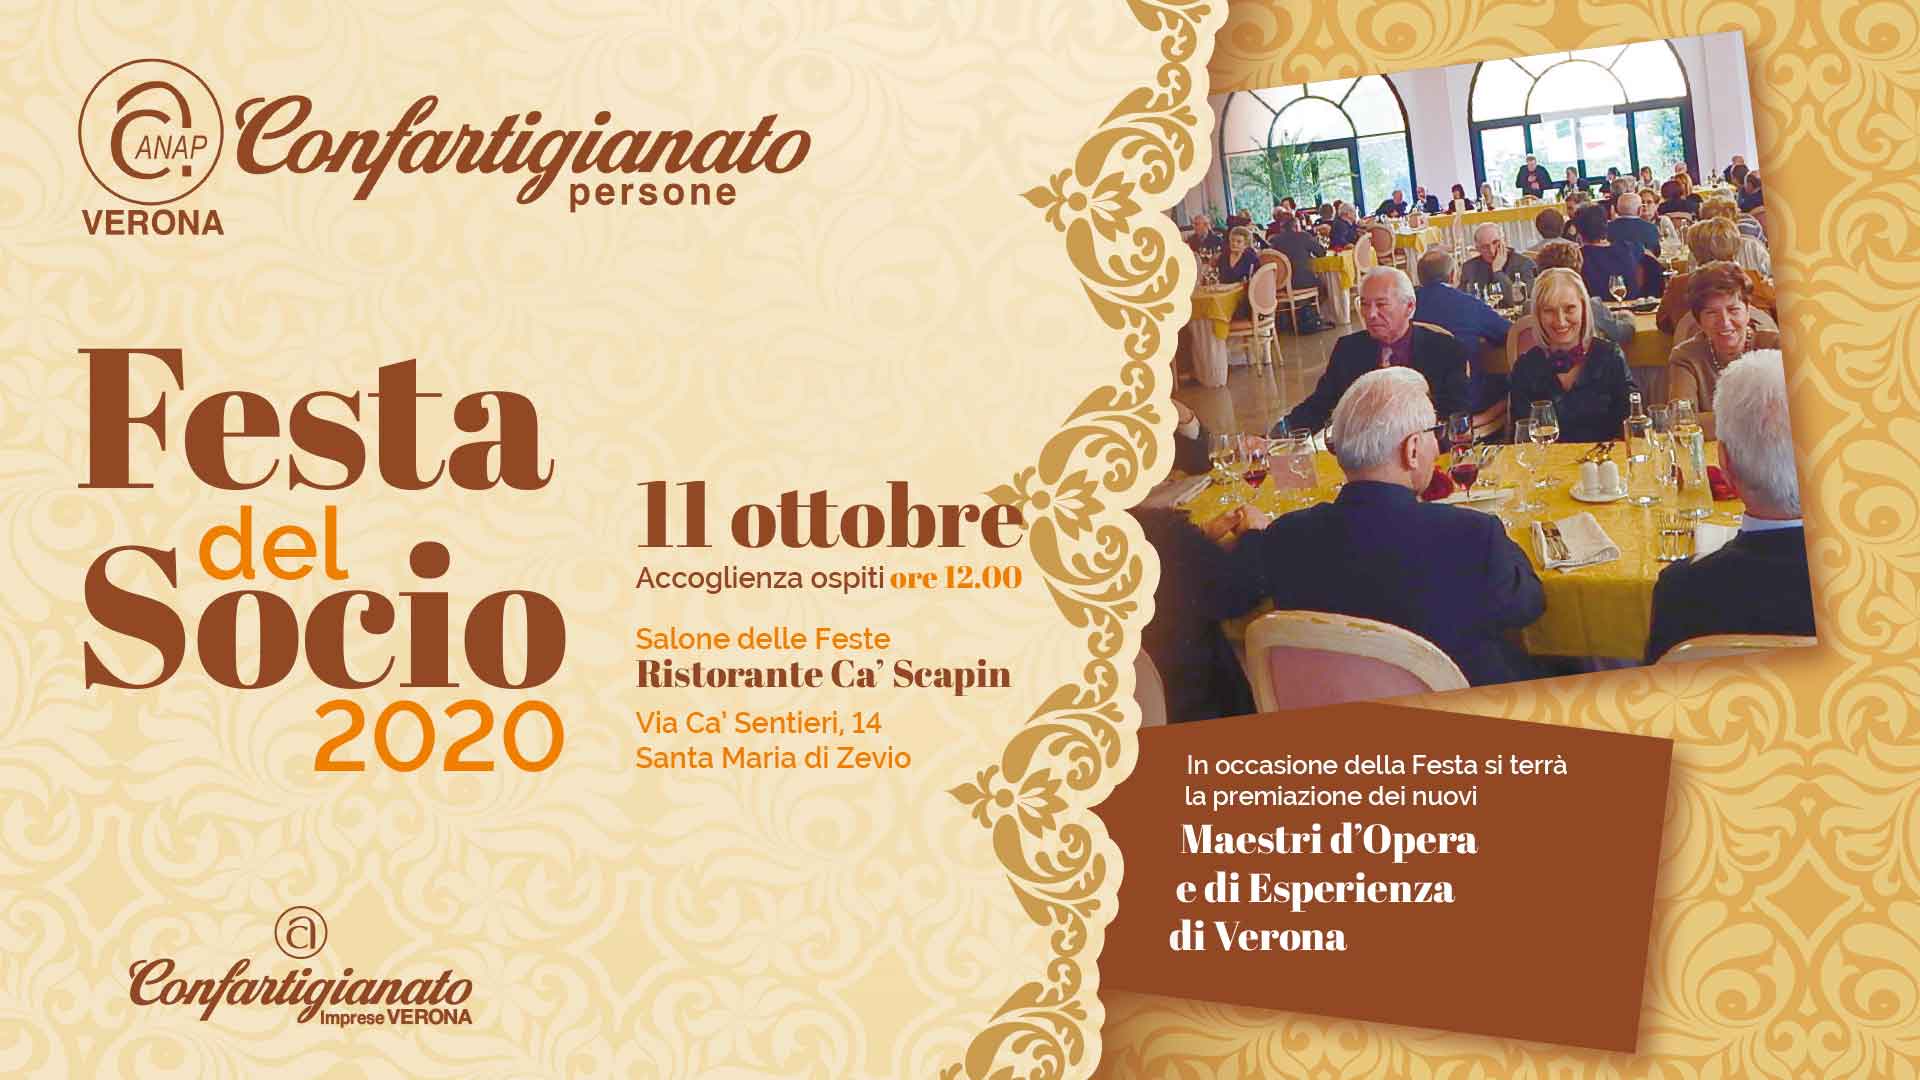 PENSIONATI ANAP – Festa del Socio 2020 e riconoscimento Maestri d'Opera e d'Esperienza: domenica 11 ottobre, iscrizioni aperte